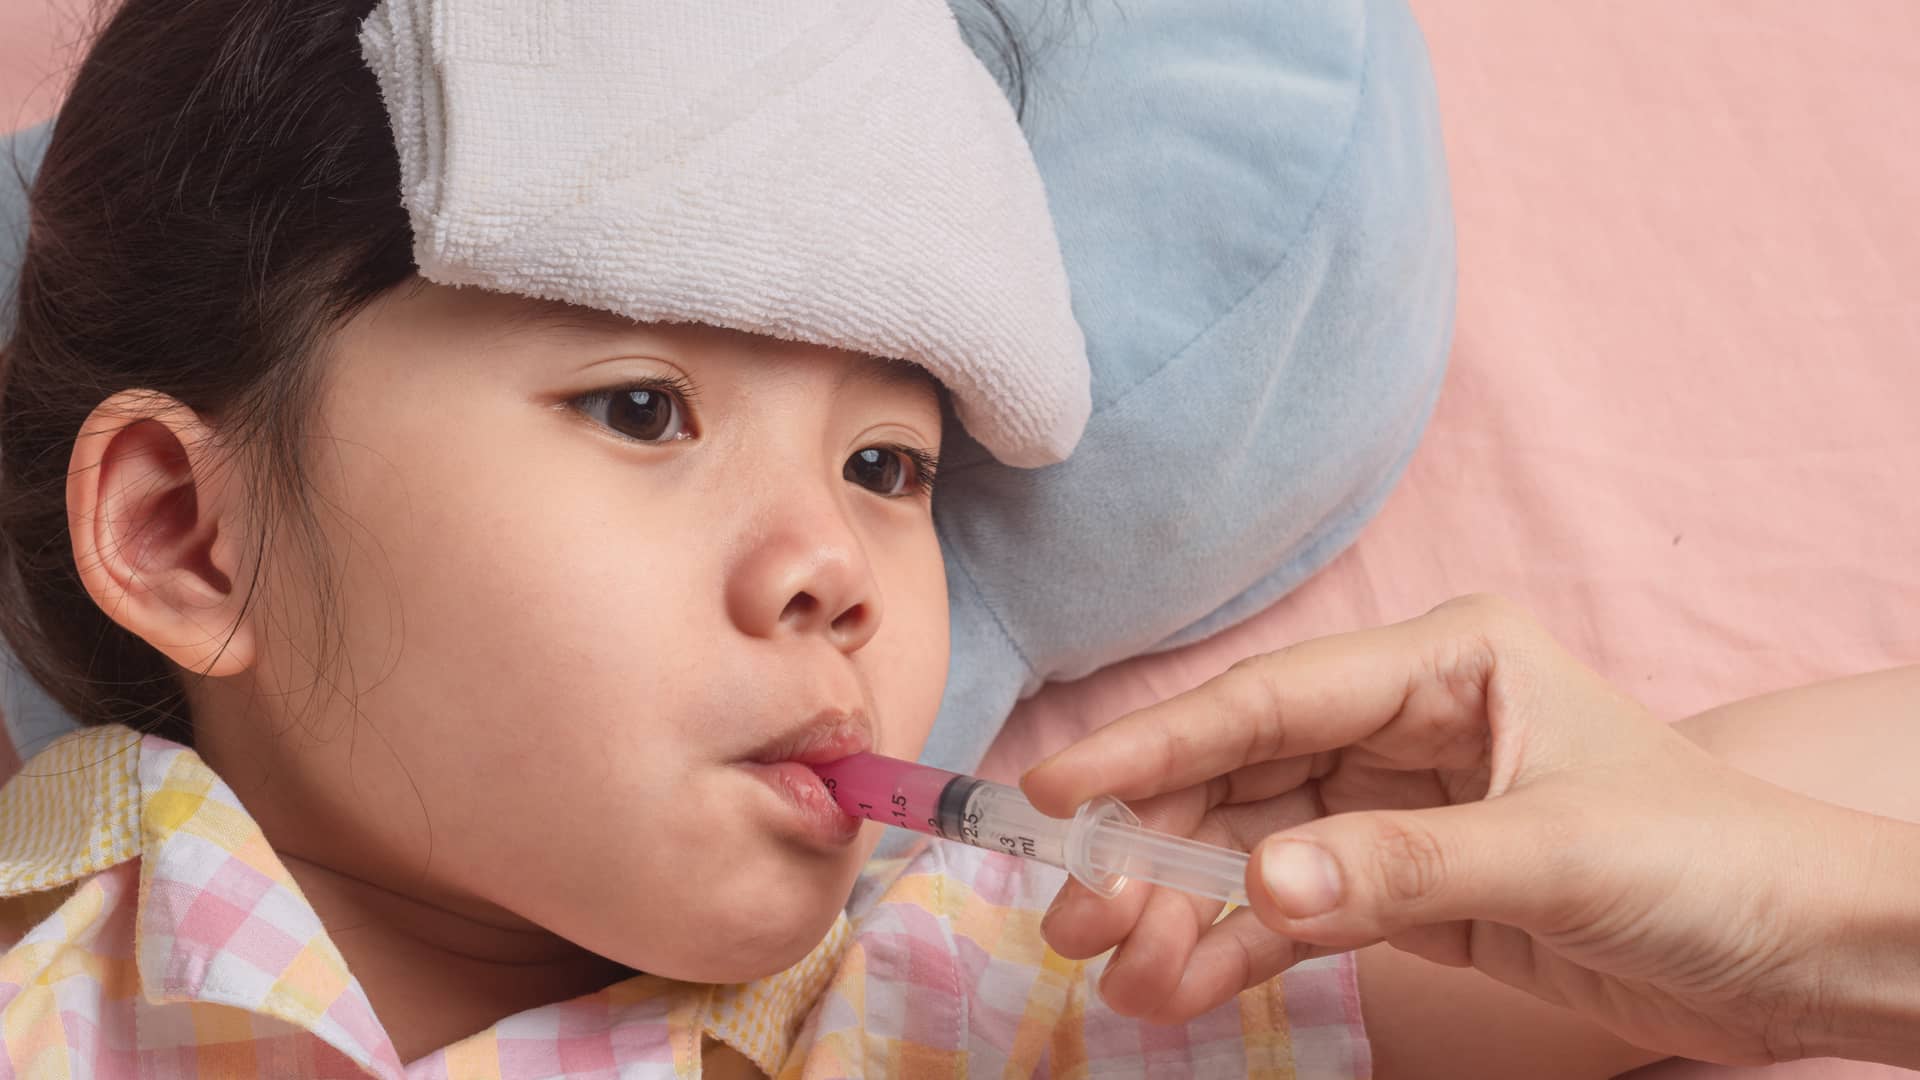 Dosis de paracetamol en bebés: ¿cuánto debo darle?